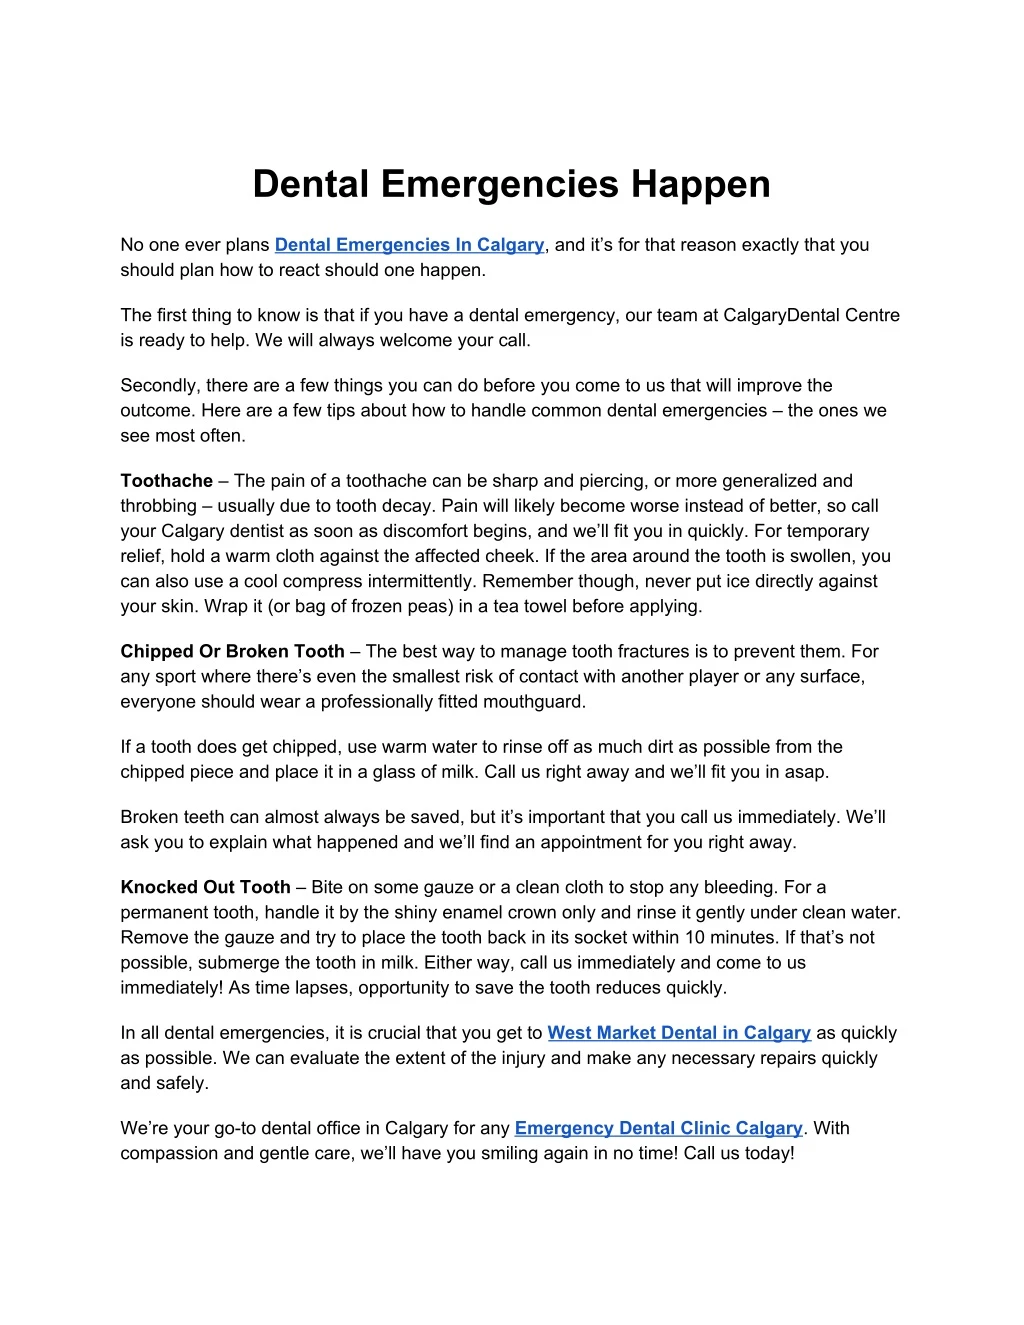 dental emergencies happen